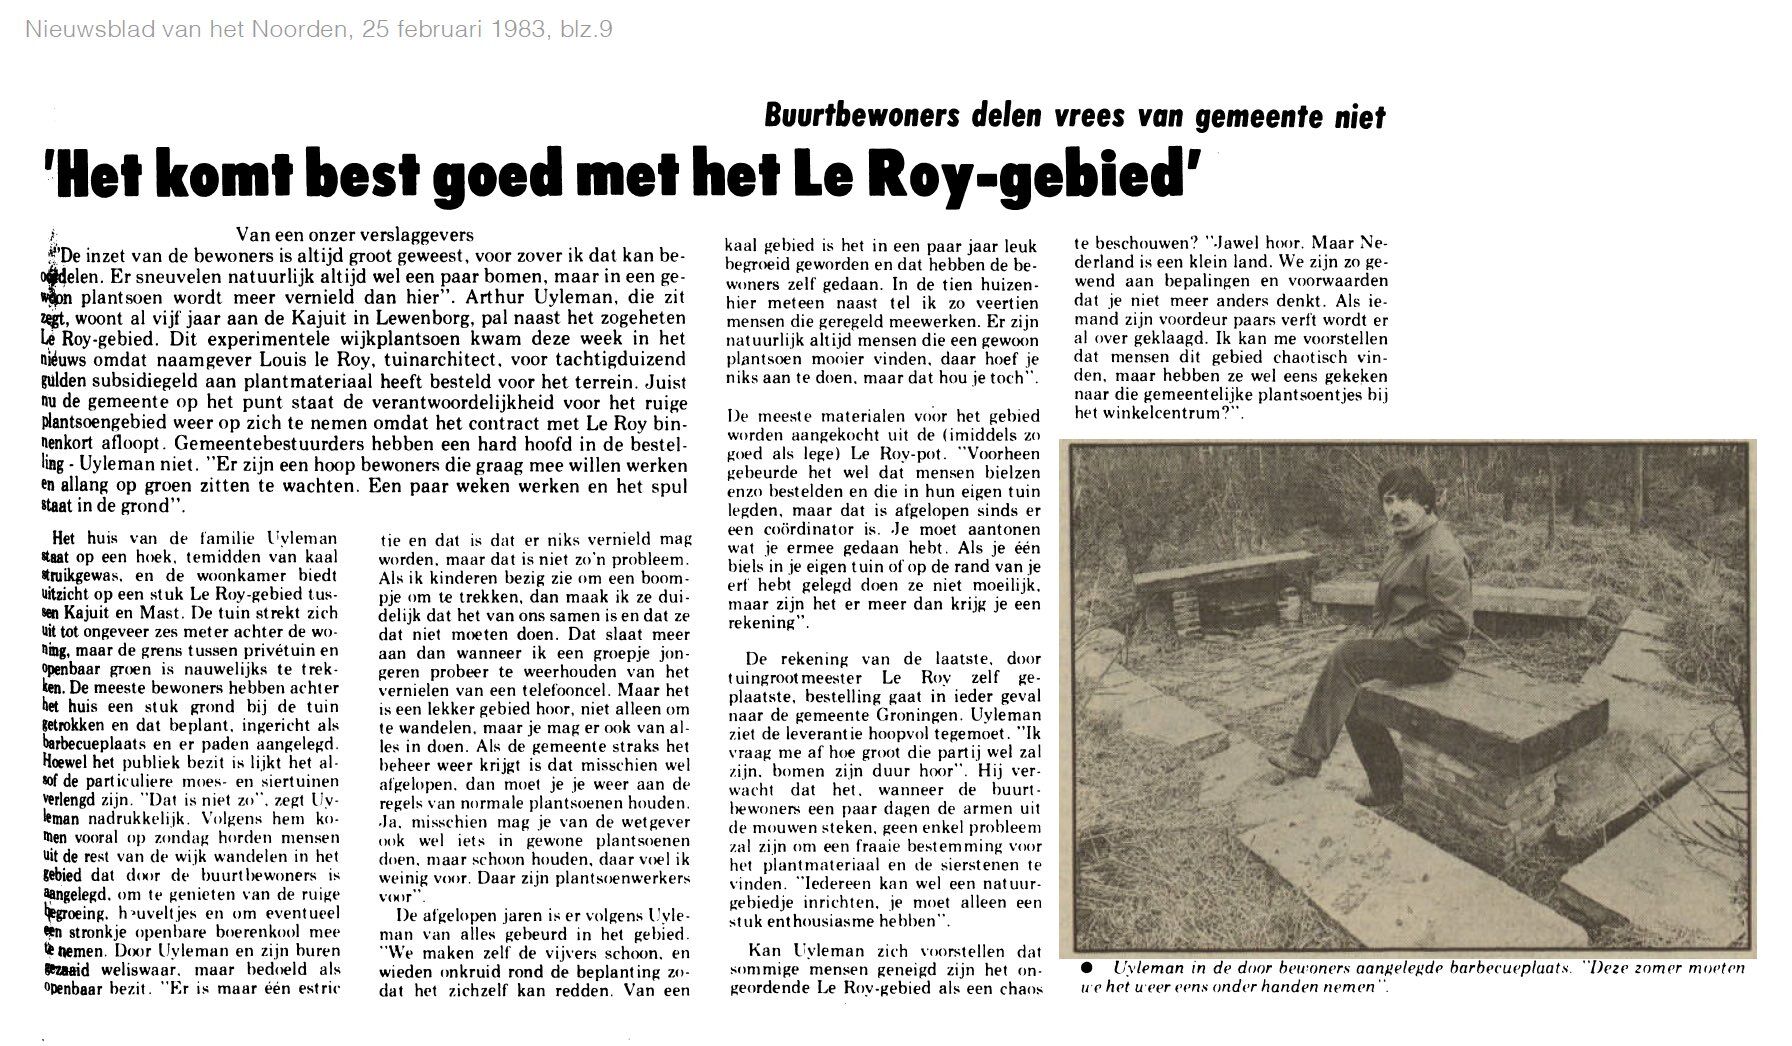 19830225_Het_komt_best_goed_met_het_Le_Roy-gebied.jpg